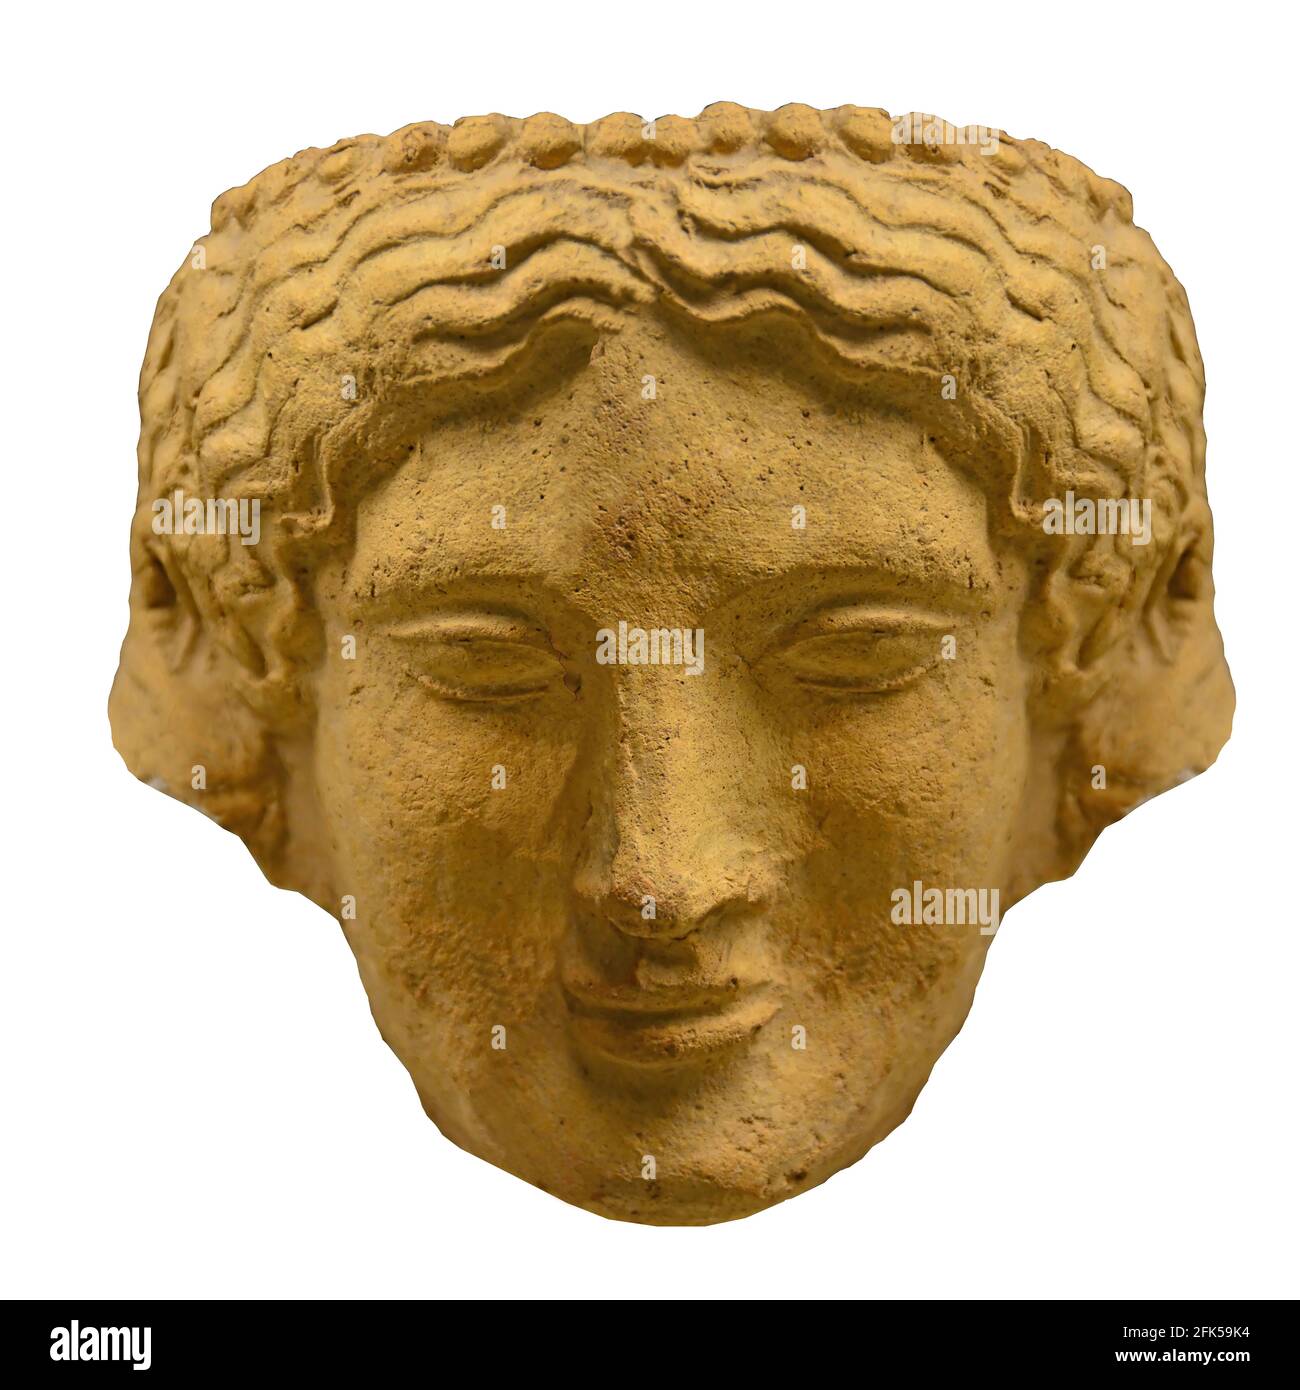 Altgriechische Skulptur des Kopfes einer Frau mit welligen Haaren und einem ruhigen Ausdruck. Datiert auf 600 v. Chr. Stockfoto